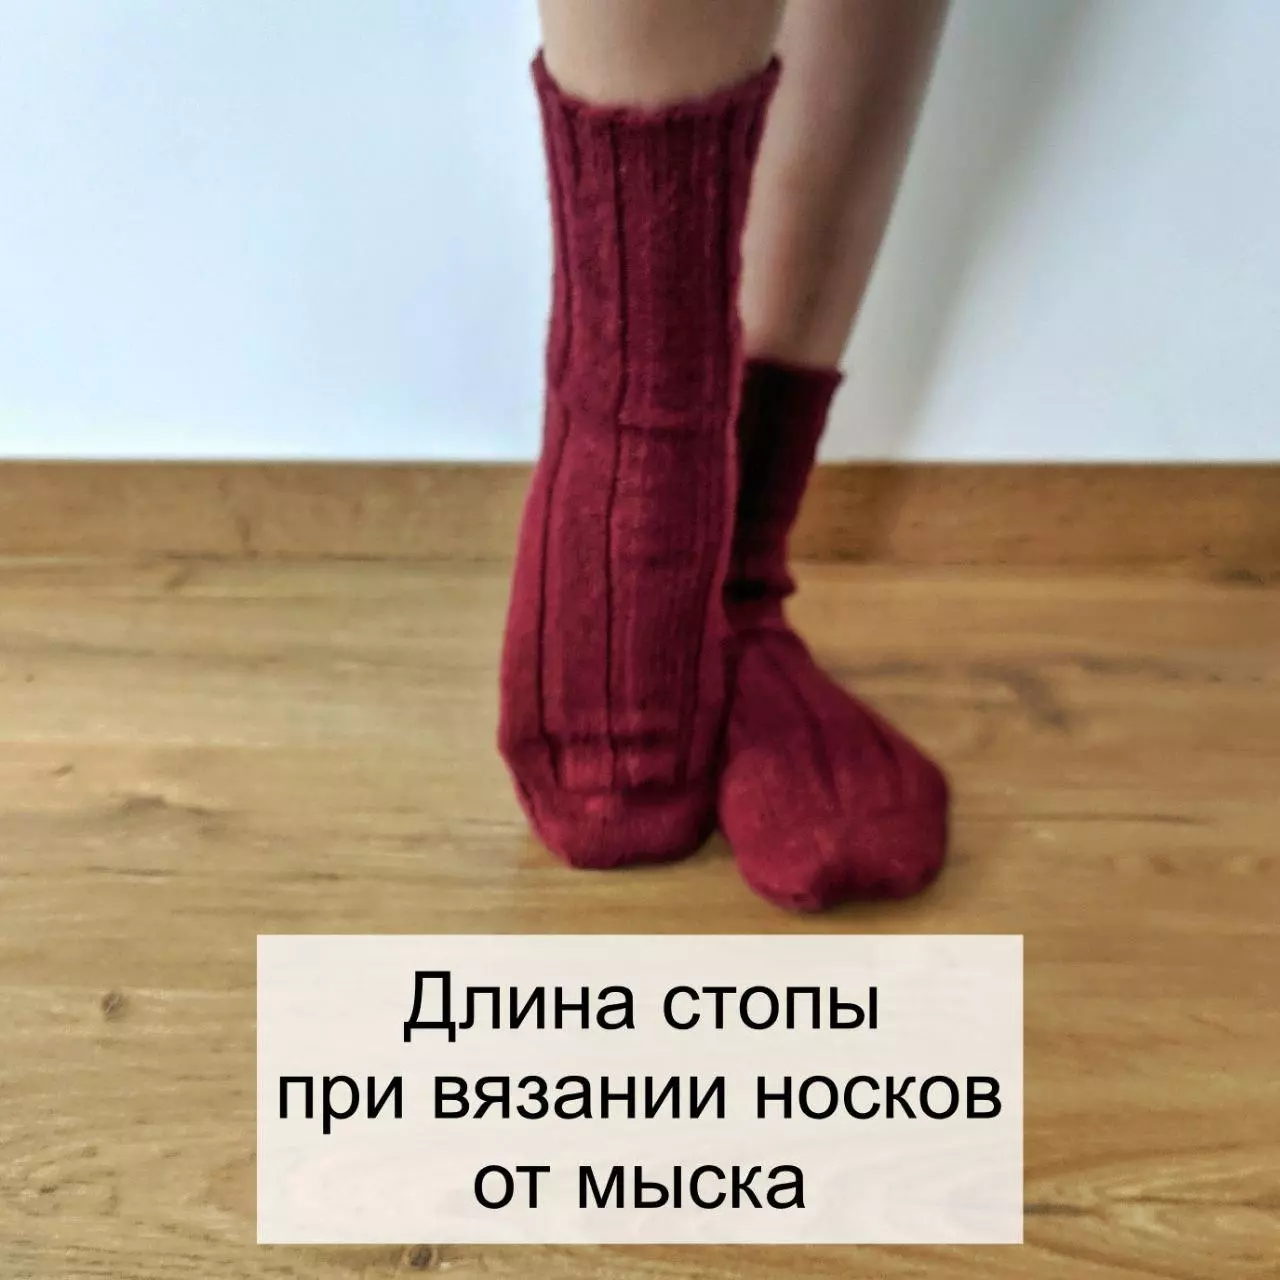 Длина стопы при вязании носков от мыска